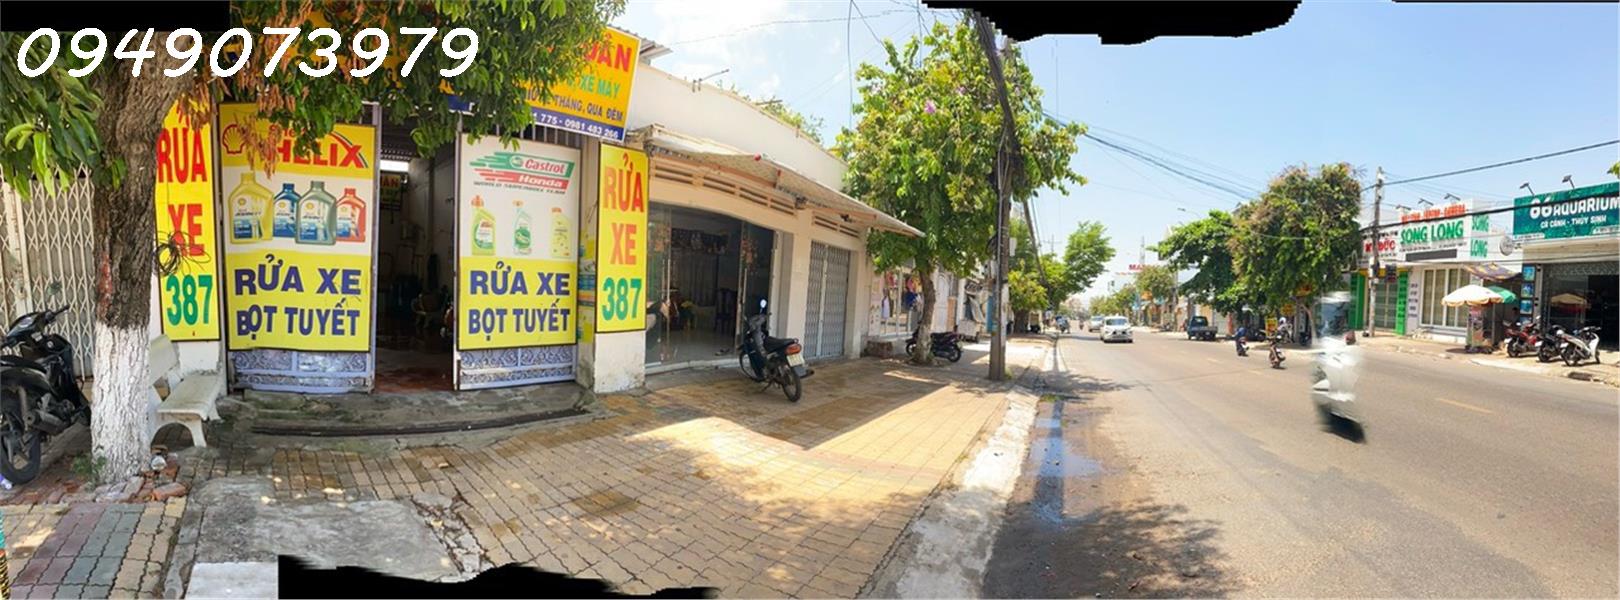 Cần bán nhà mặt tiền Thủ Khoa Huân diện tích 459m² Trung Tâm Thành Phố Phan Thiết - Bình Thuận. - Ảnh chính